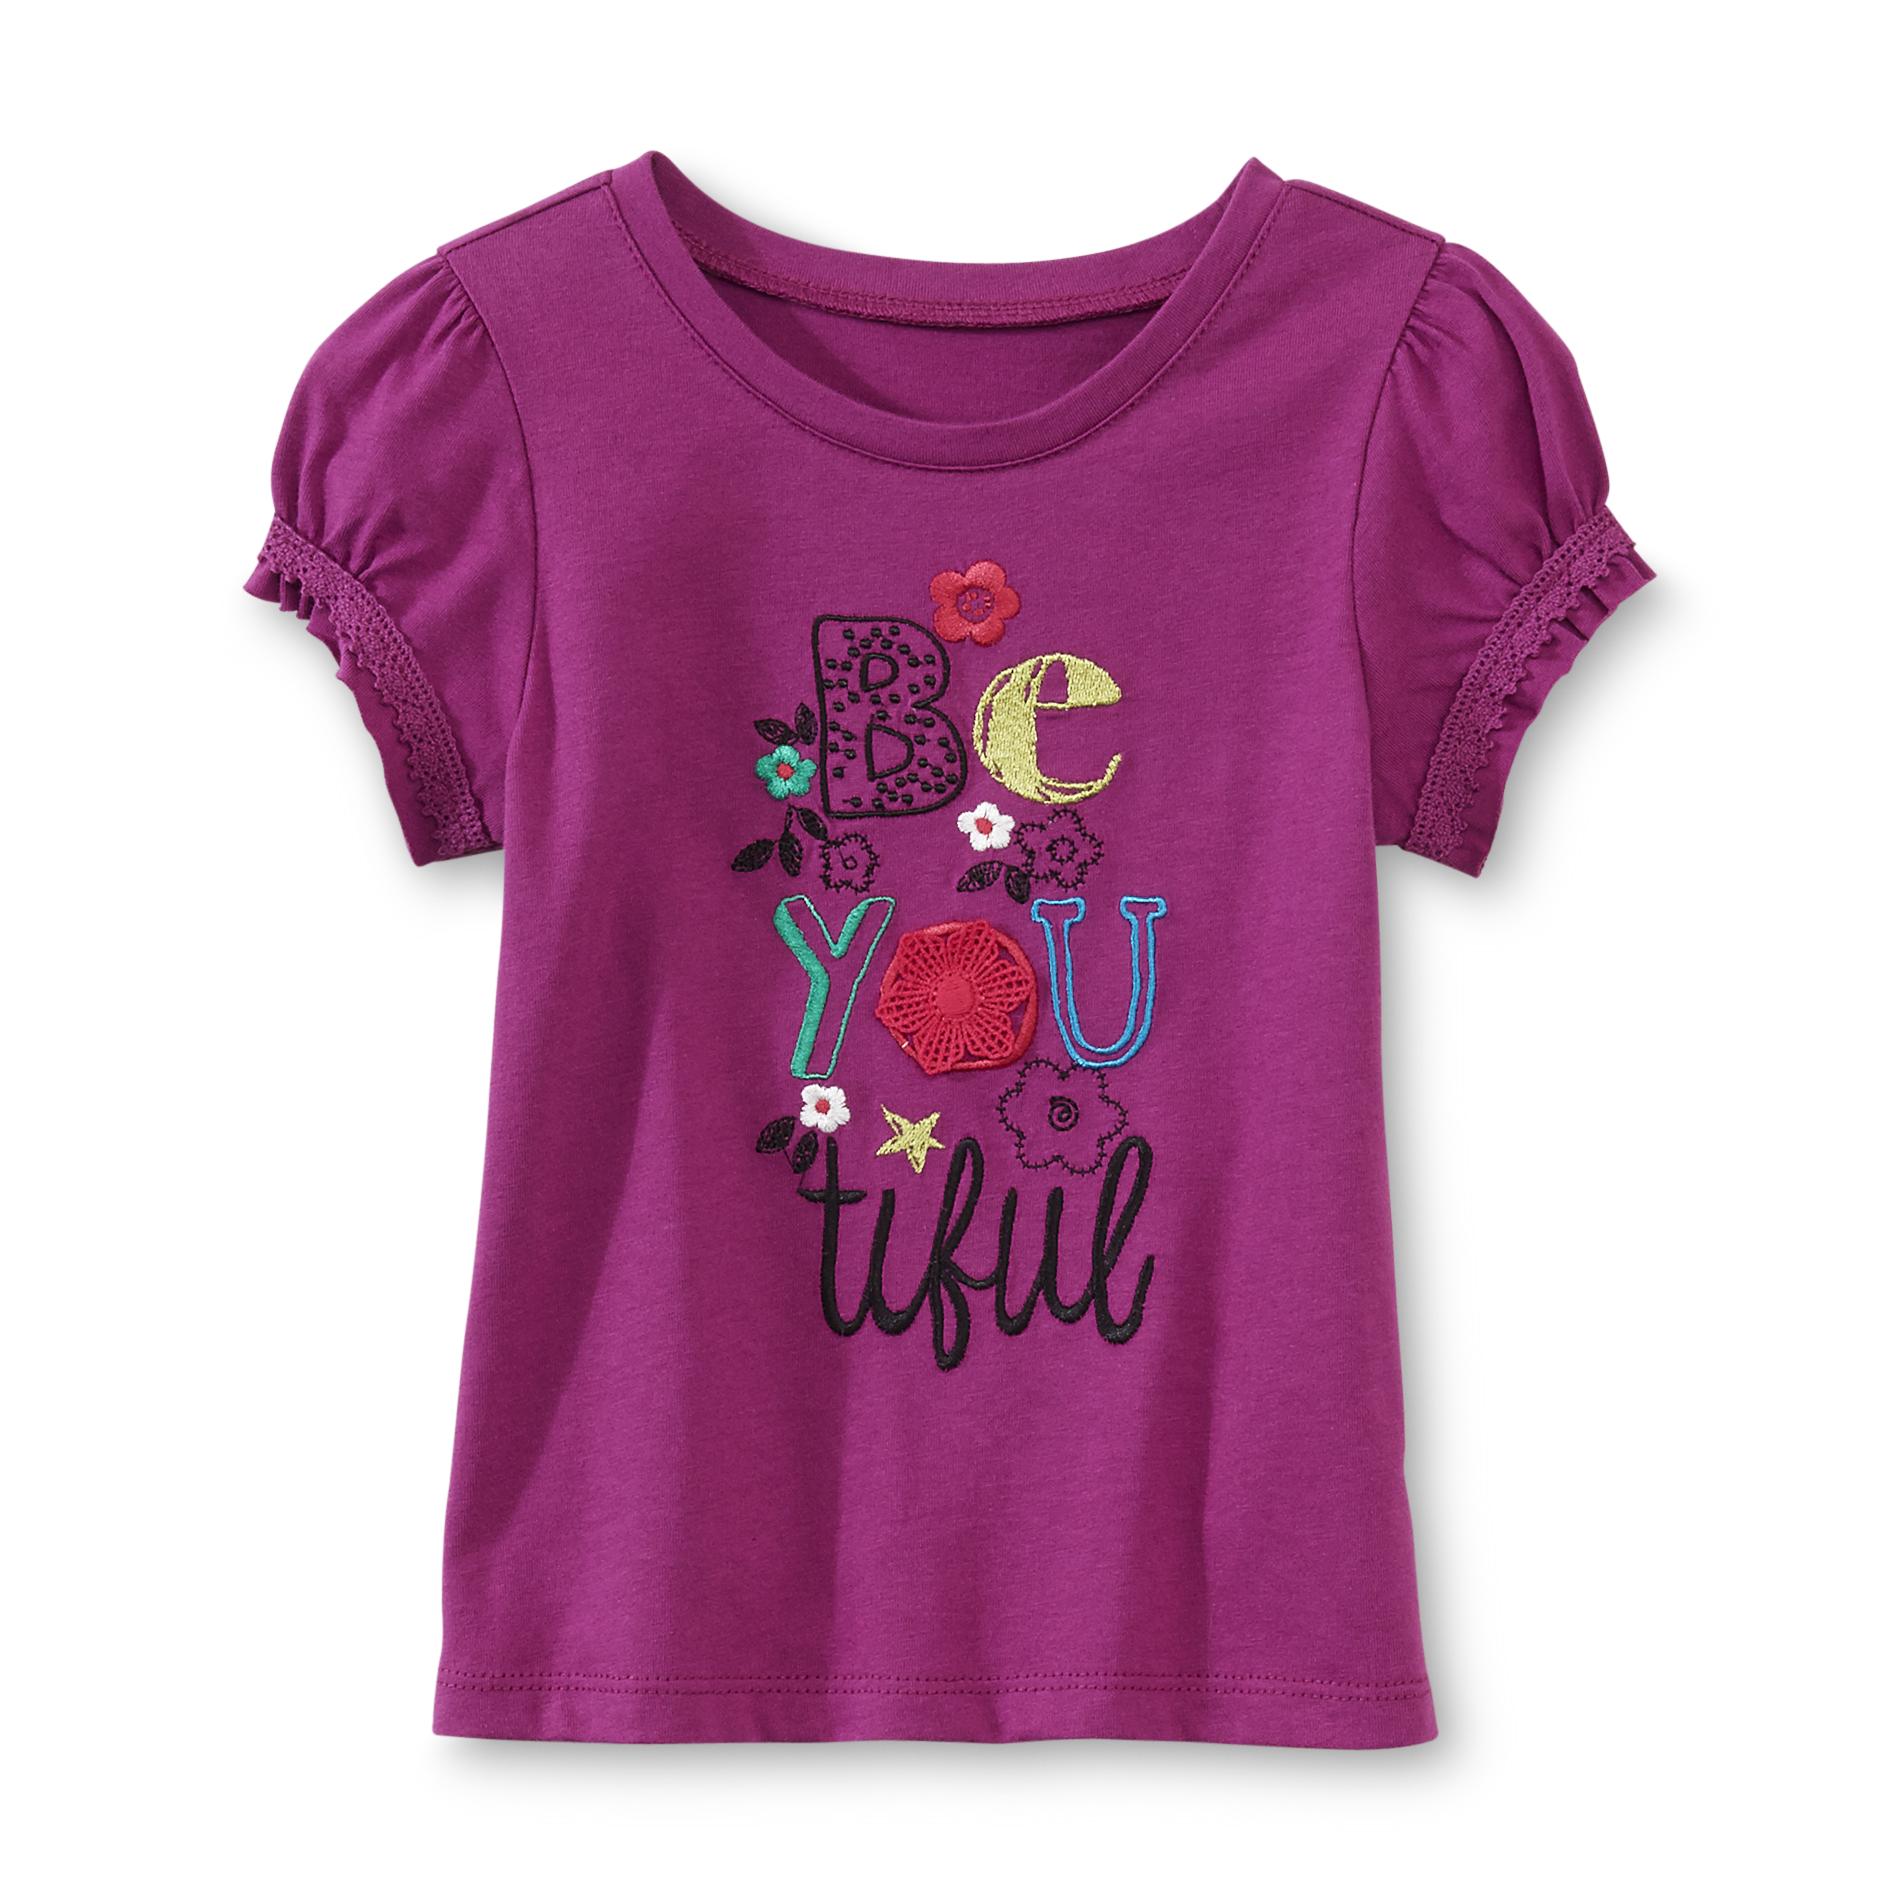 Toughskins Toddler Girl's Cap Sleeve T-Shirt - Beautiful